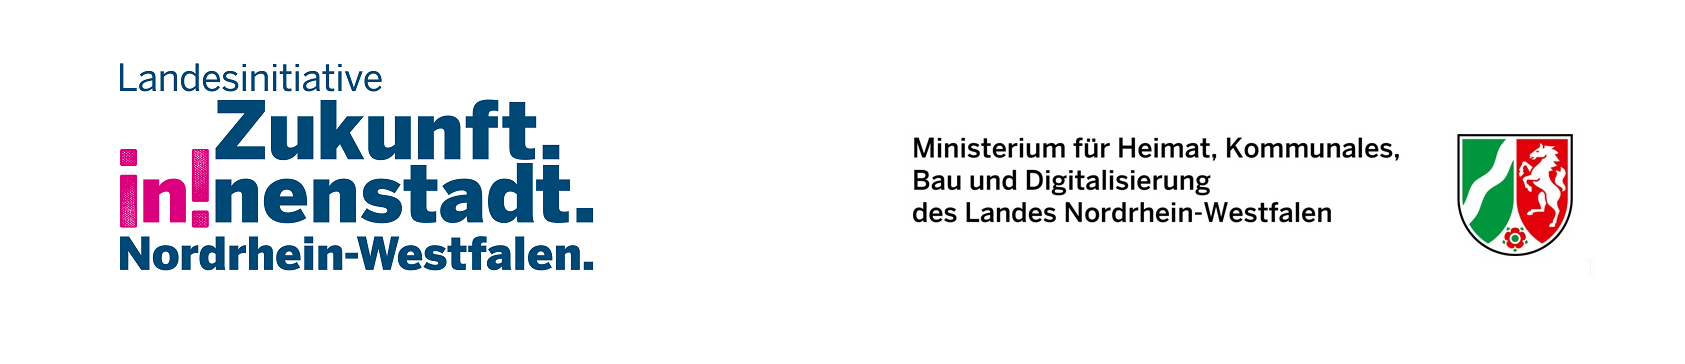 Dachmarke "Landesinitiative Zukunft. in!nenstadt.Nordrhein-Westfalen." und Logo des Ministerium für Heimat, Kommunales, Bau und Digitalisierung des Landes Nordrhein-Westfalen